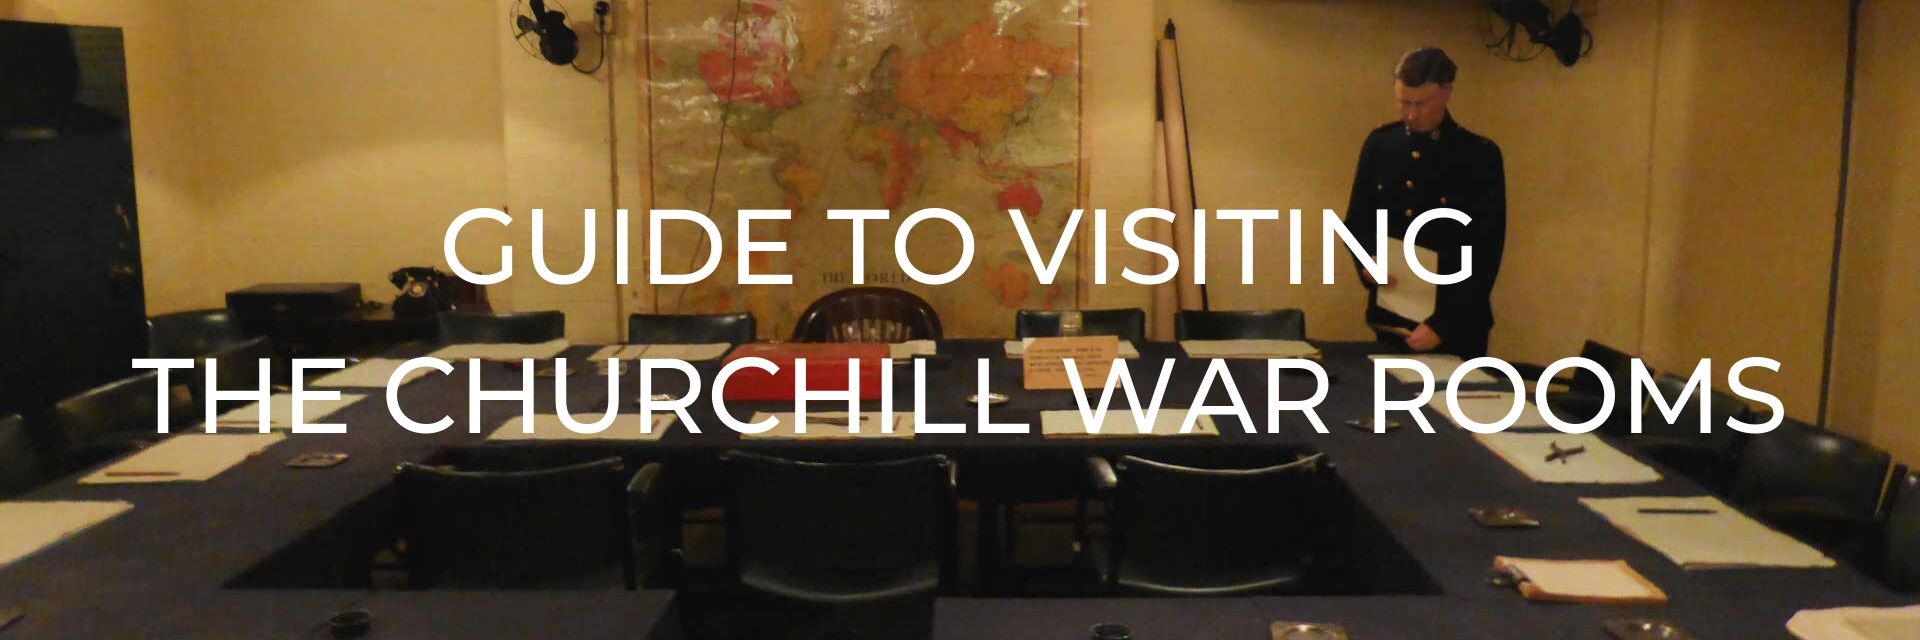 Churchill War Rooms Desktop Header Image